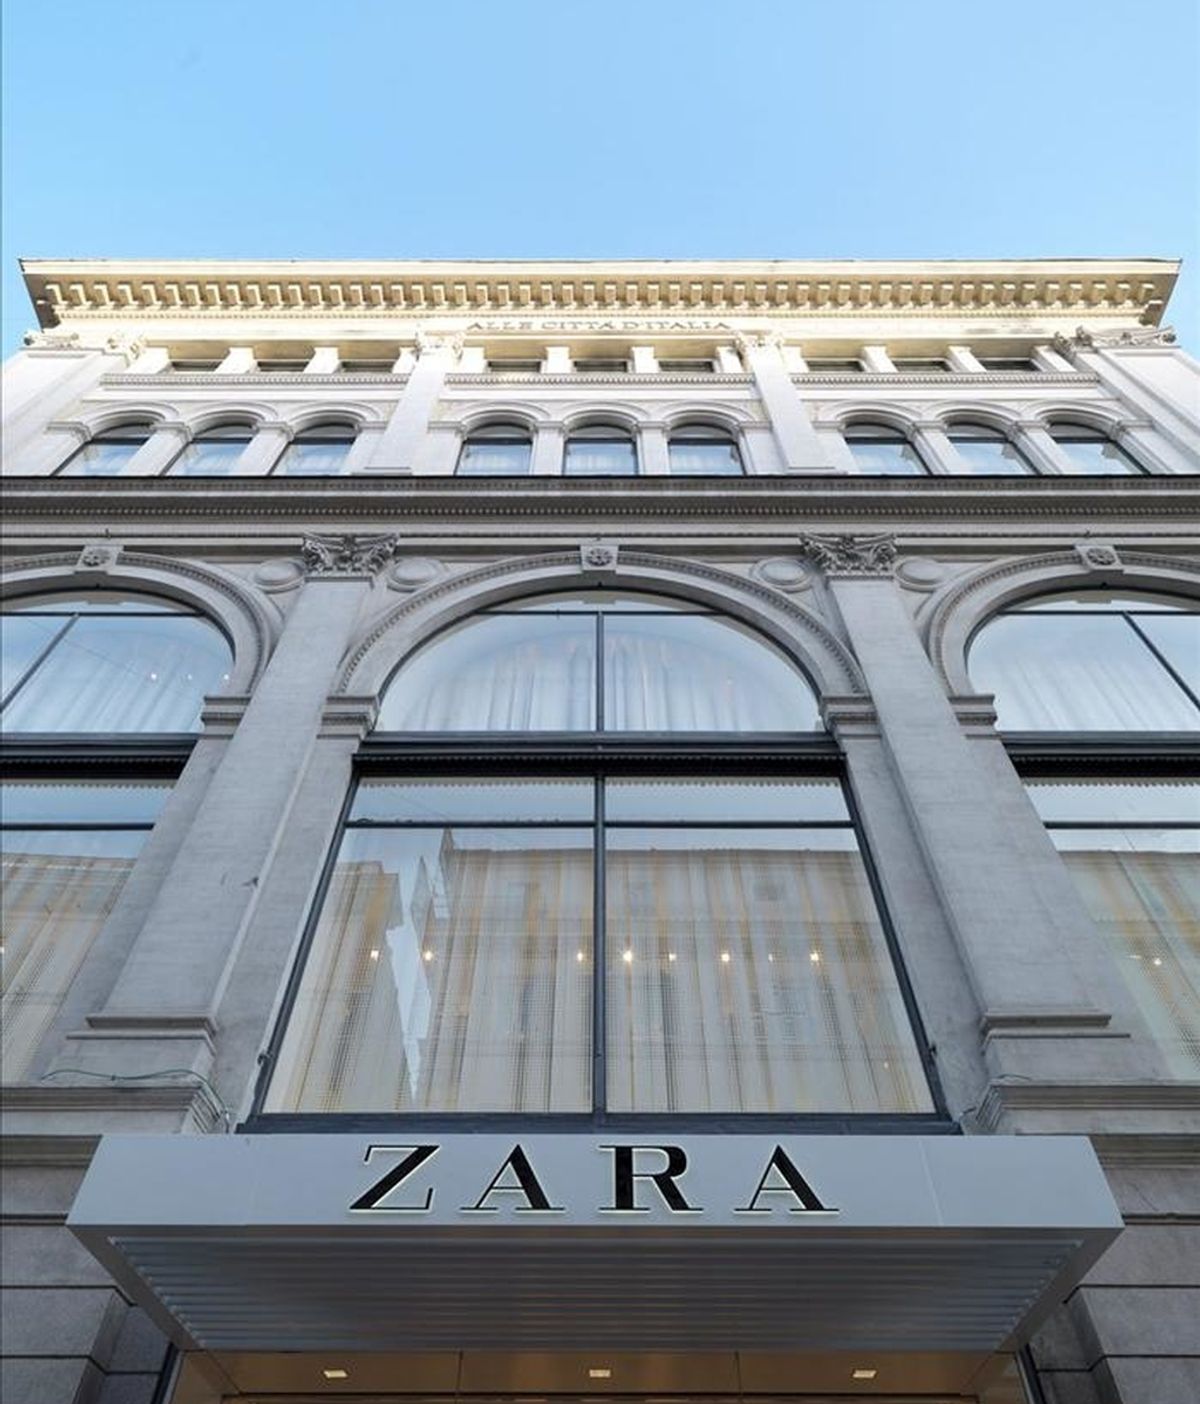 Fotografía facilitada por Inditex que muestra una tienda de Zara. EFE/Archivo